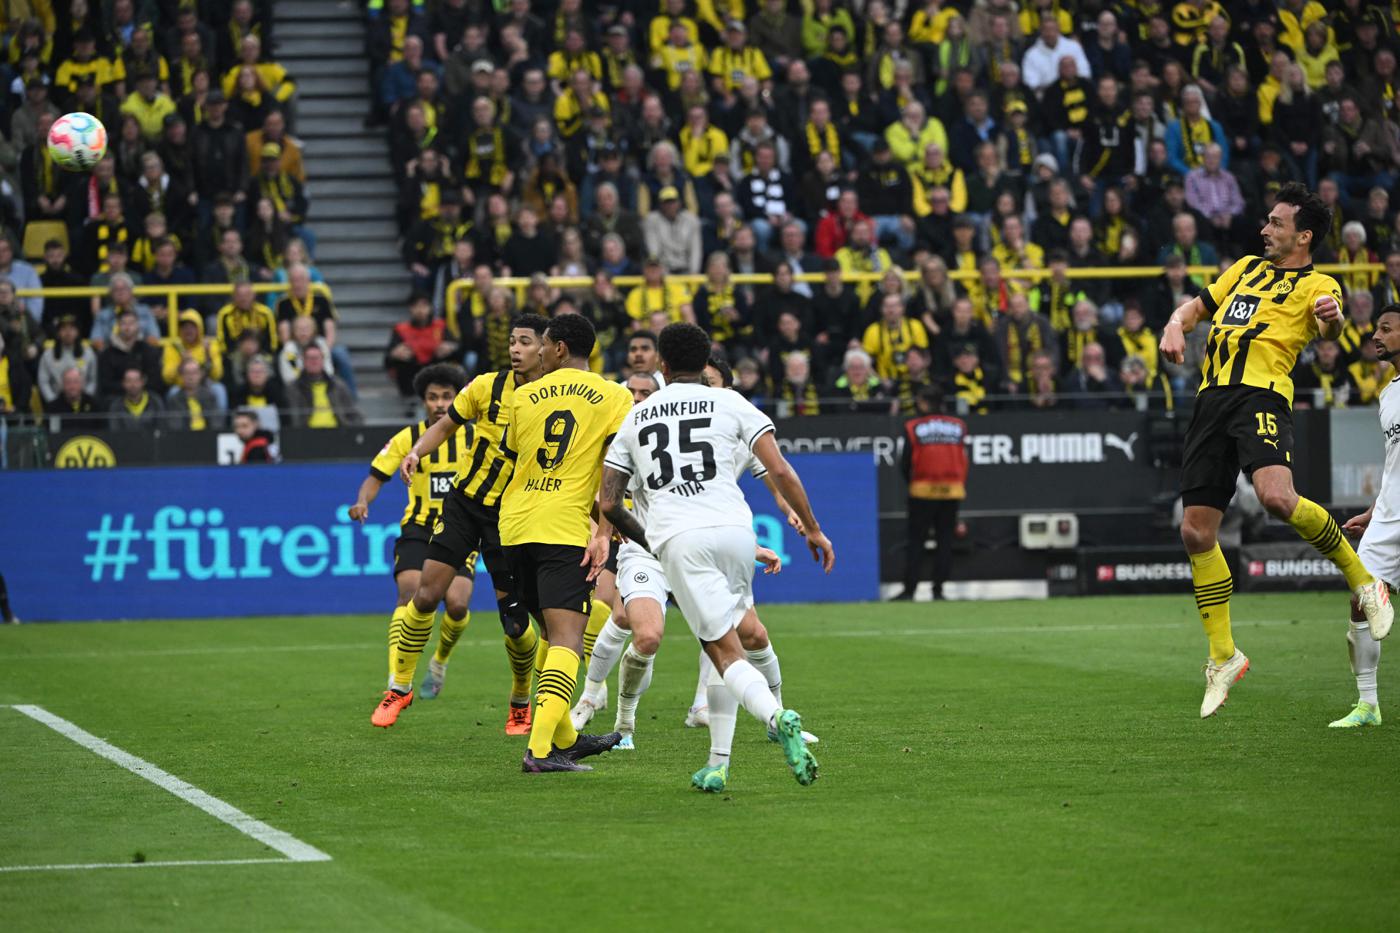 Borussia D - Eintracht - 4-0. German Championship, round 29. Match review, statistics.